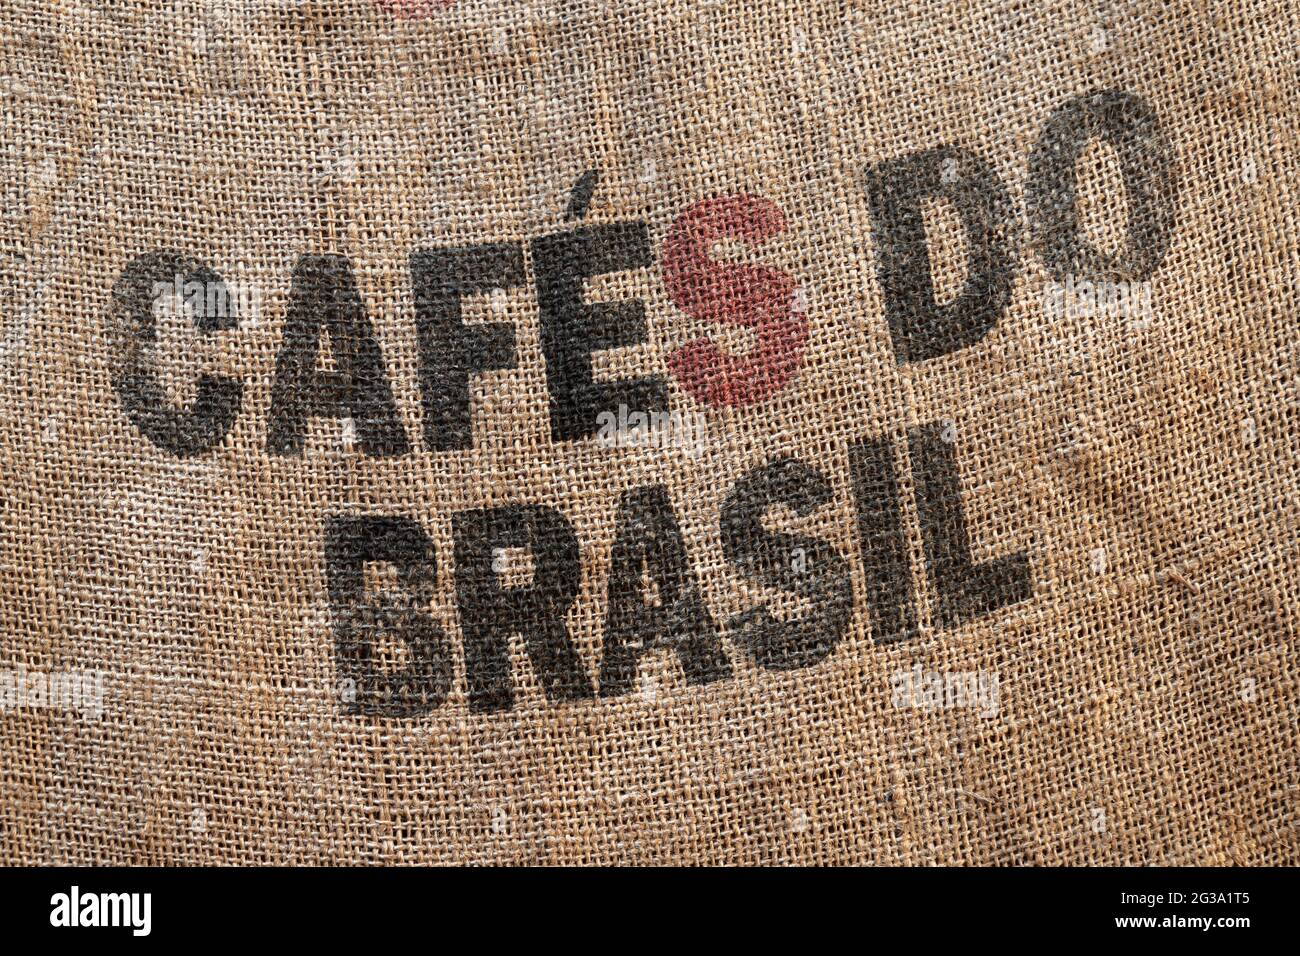 Texto de marcado estándar para café brasileño en una bolsa de envío de yute, foto de fondo Foto de stock